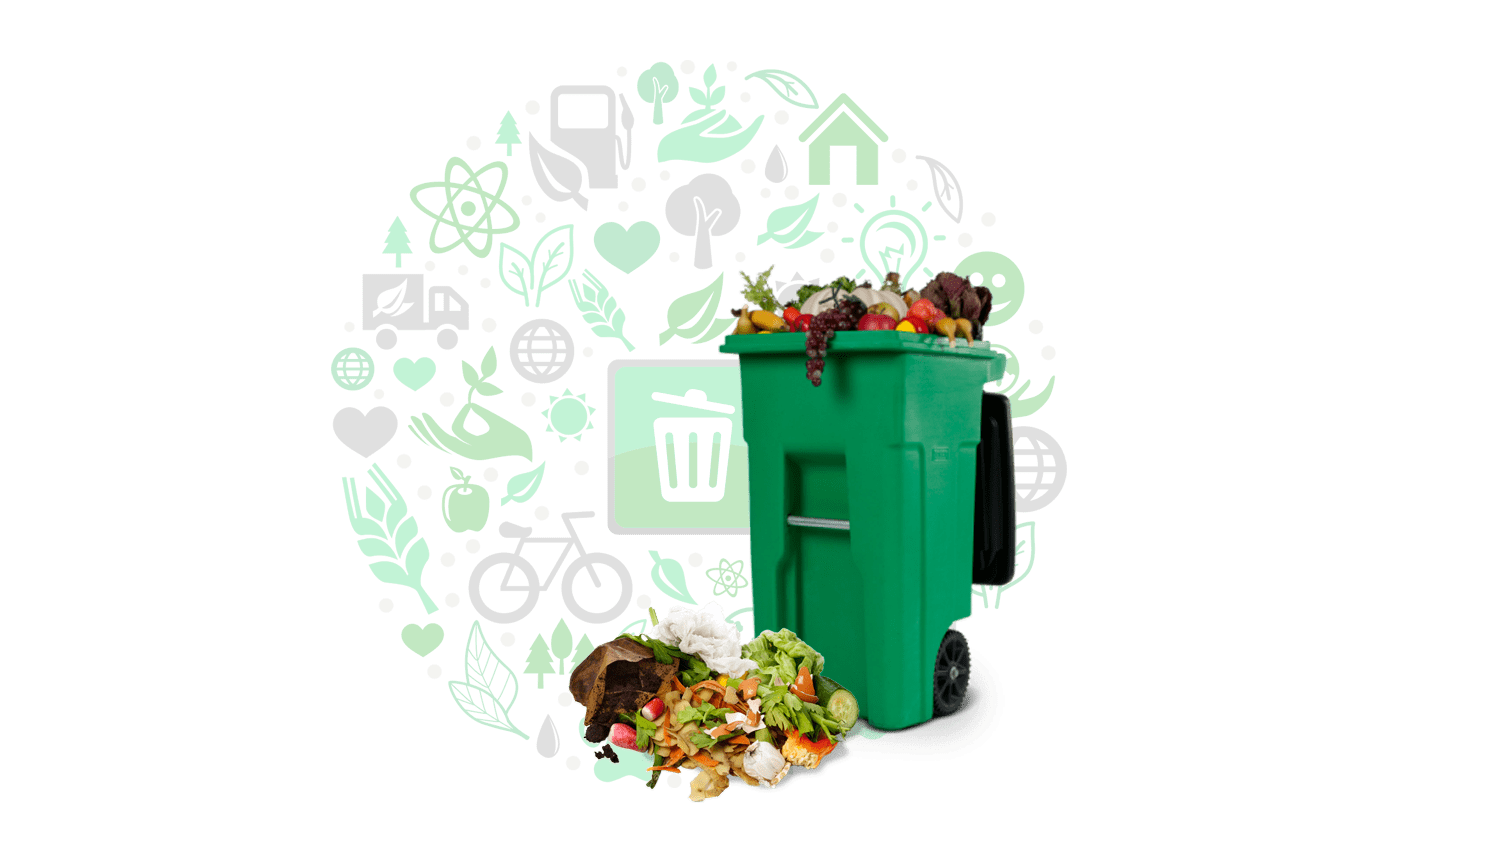 Биологических отходов. Утилизация биологических отходов. Переработка пищевых отходов. Контейнер с биоотходами пищевые отходы.